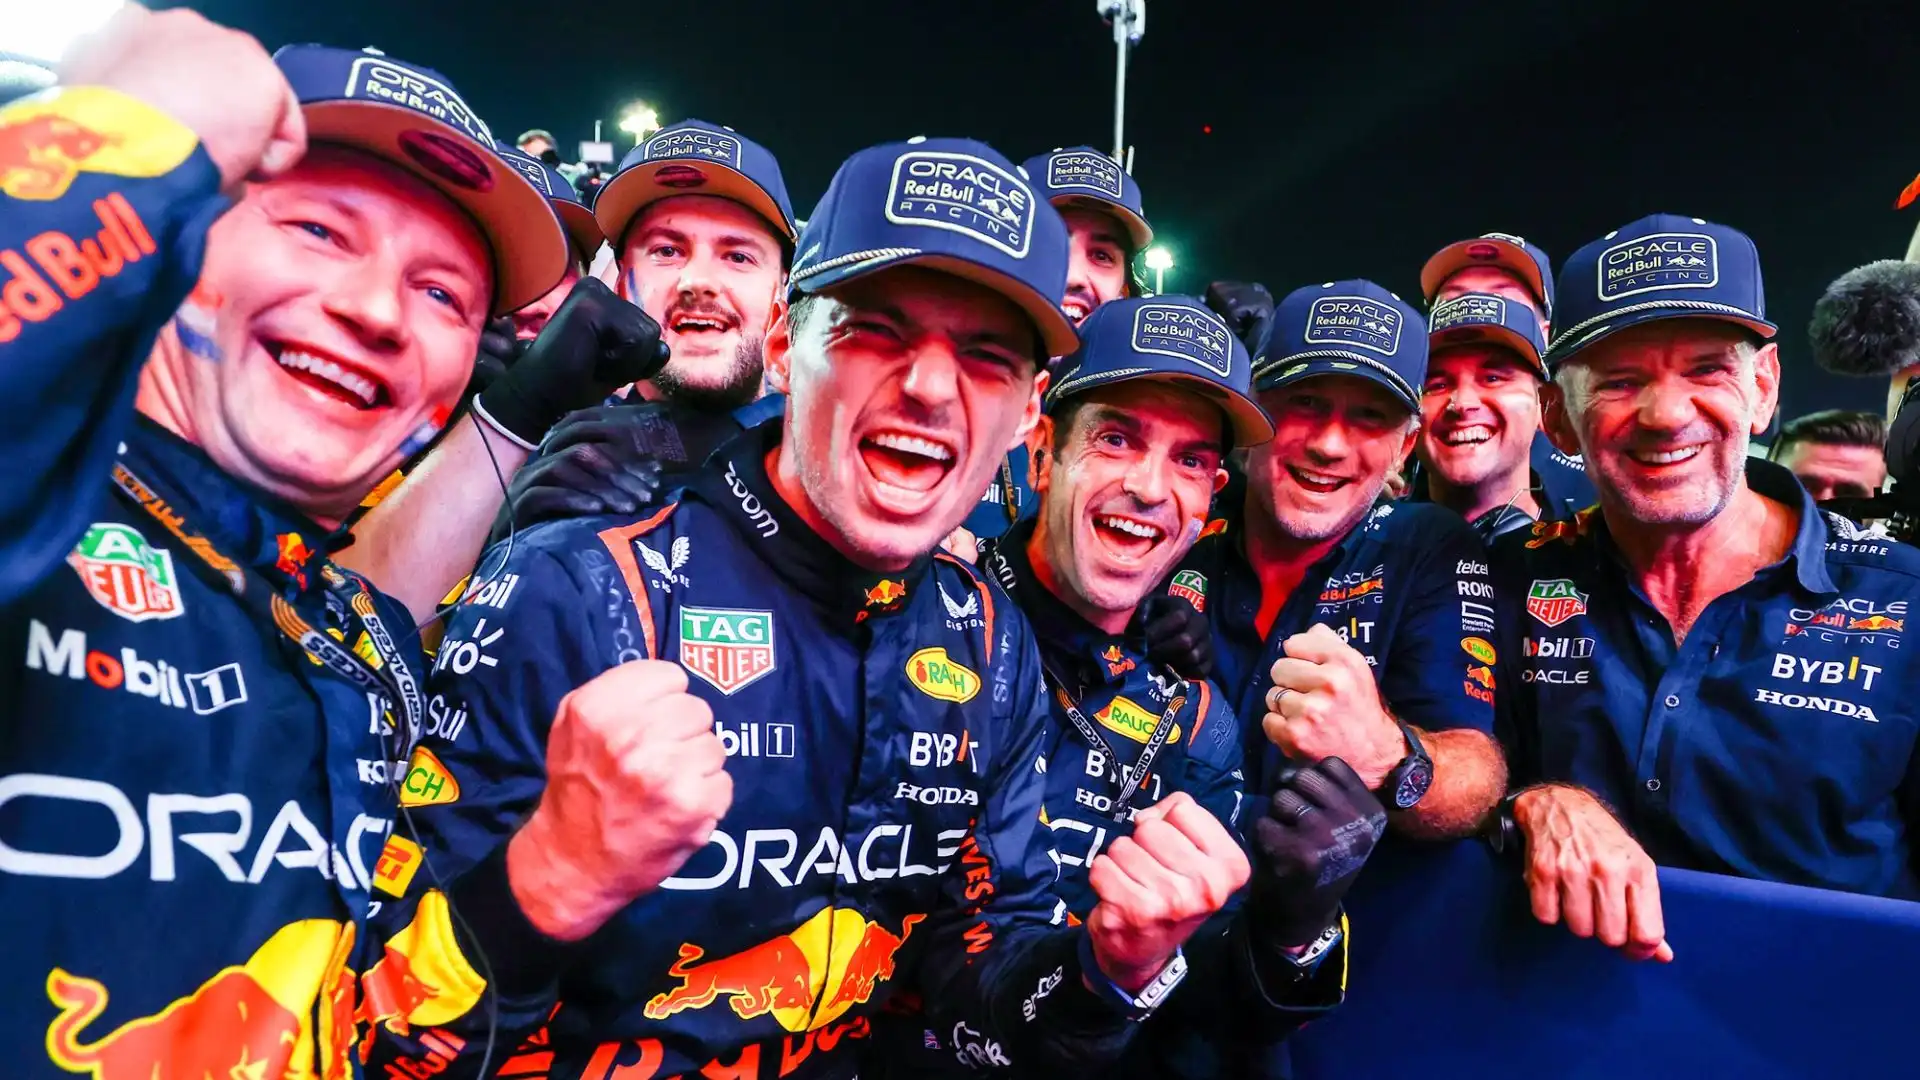 Quest'anno la Red Bull si è avvicinata alla perfezione: "È stato un lavoro di squadra, penso che quest’anno la macchina sia stata realmente dominante e incredibile, cerco di estrarne il massimo potenziale"